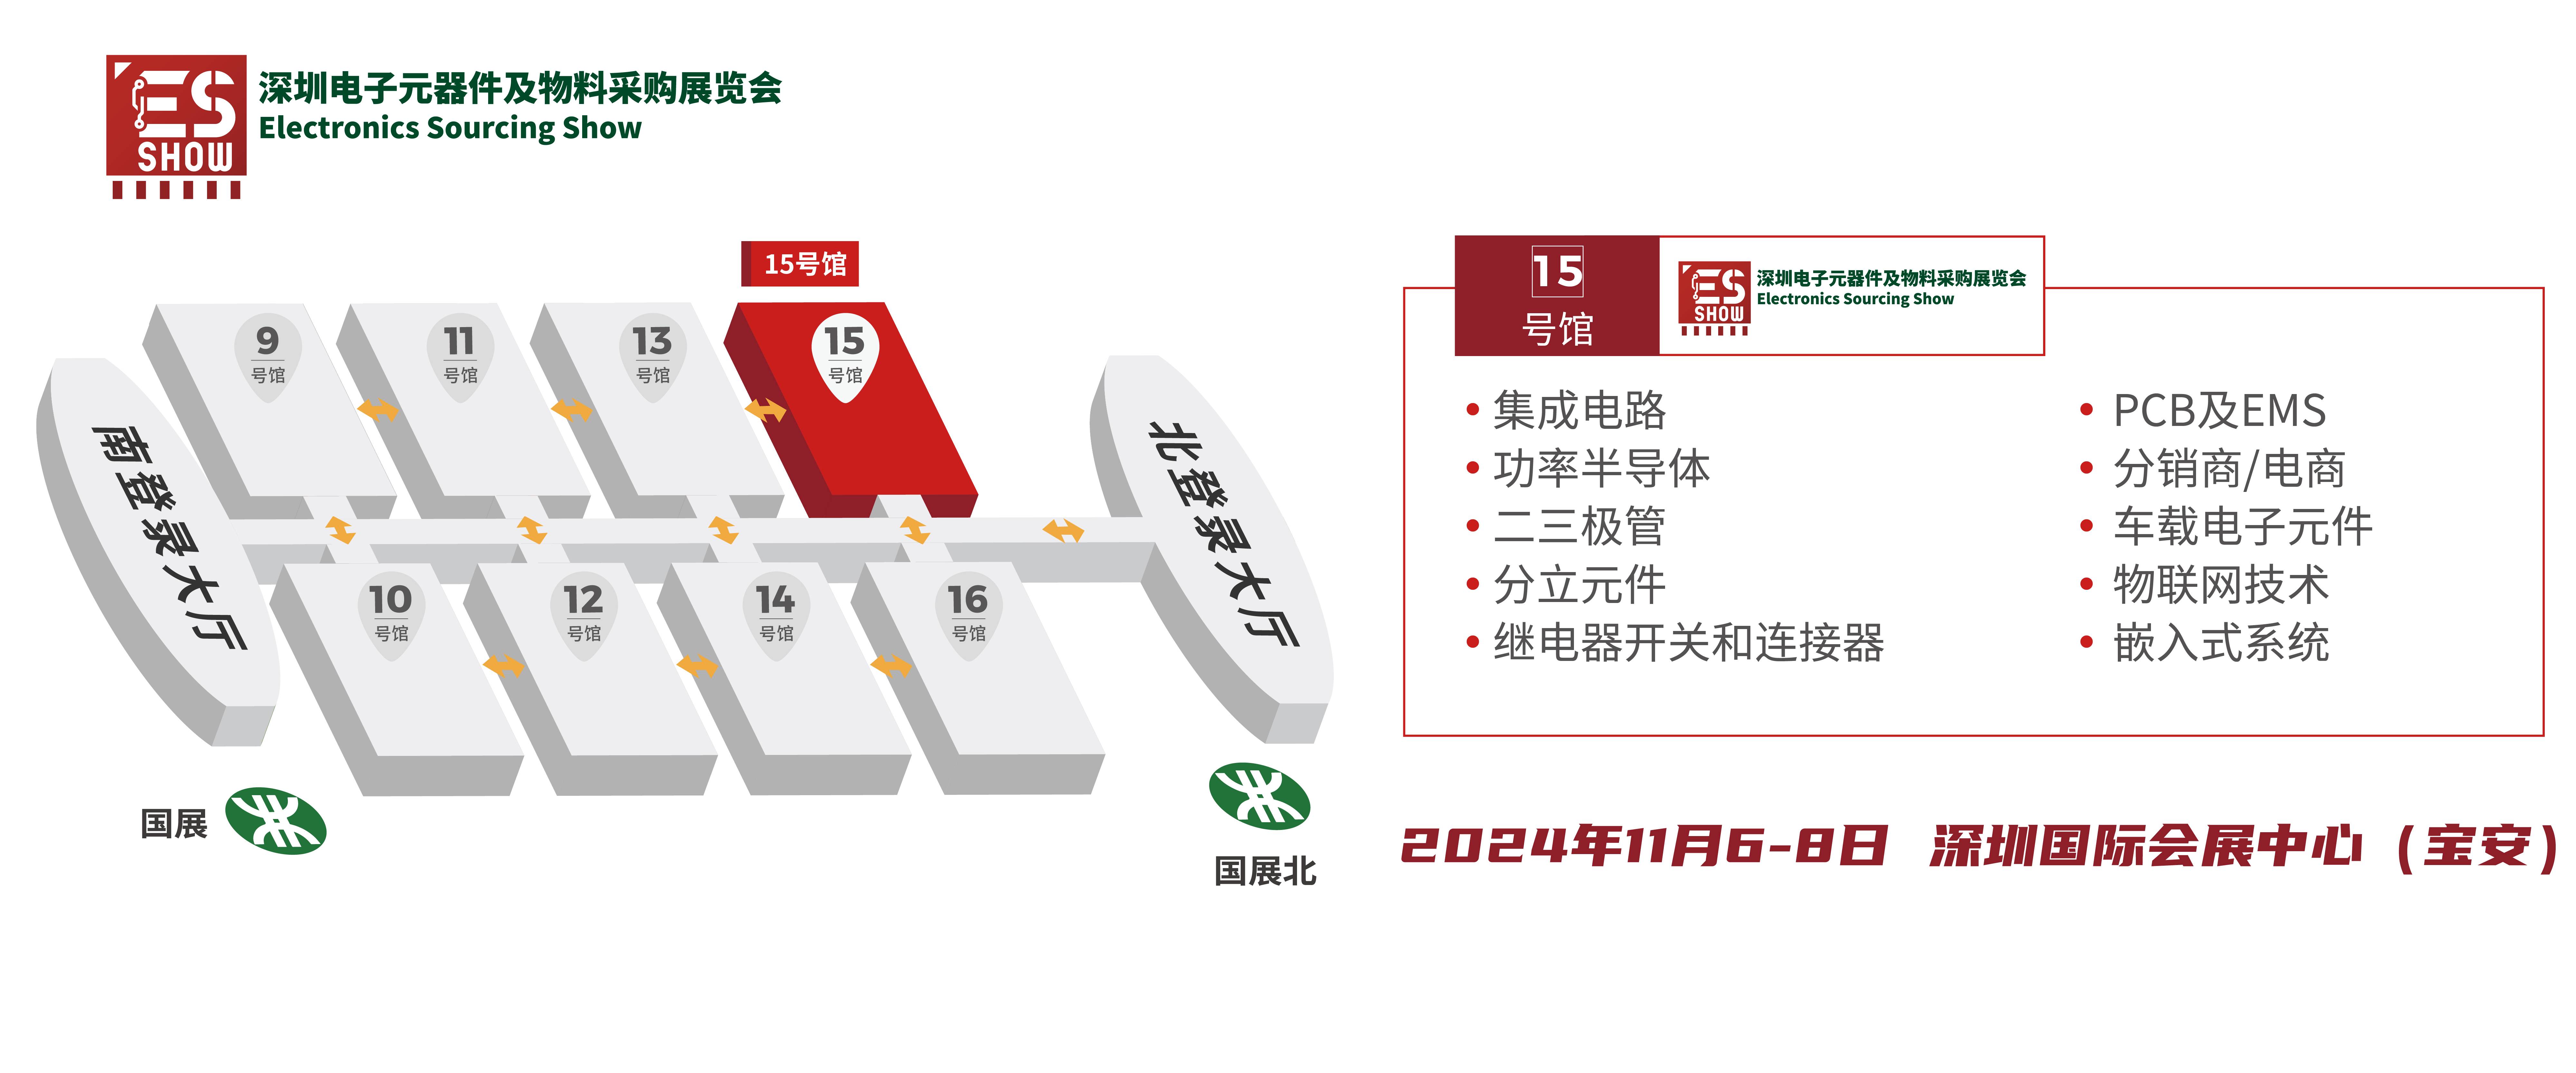 深圳电子展 GPU 华南电子展 AI 国产GPU 中国电子展